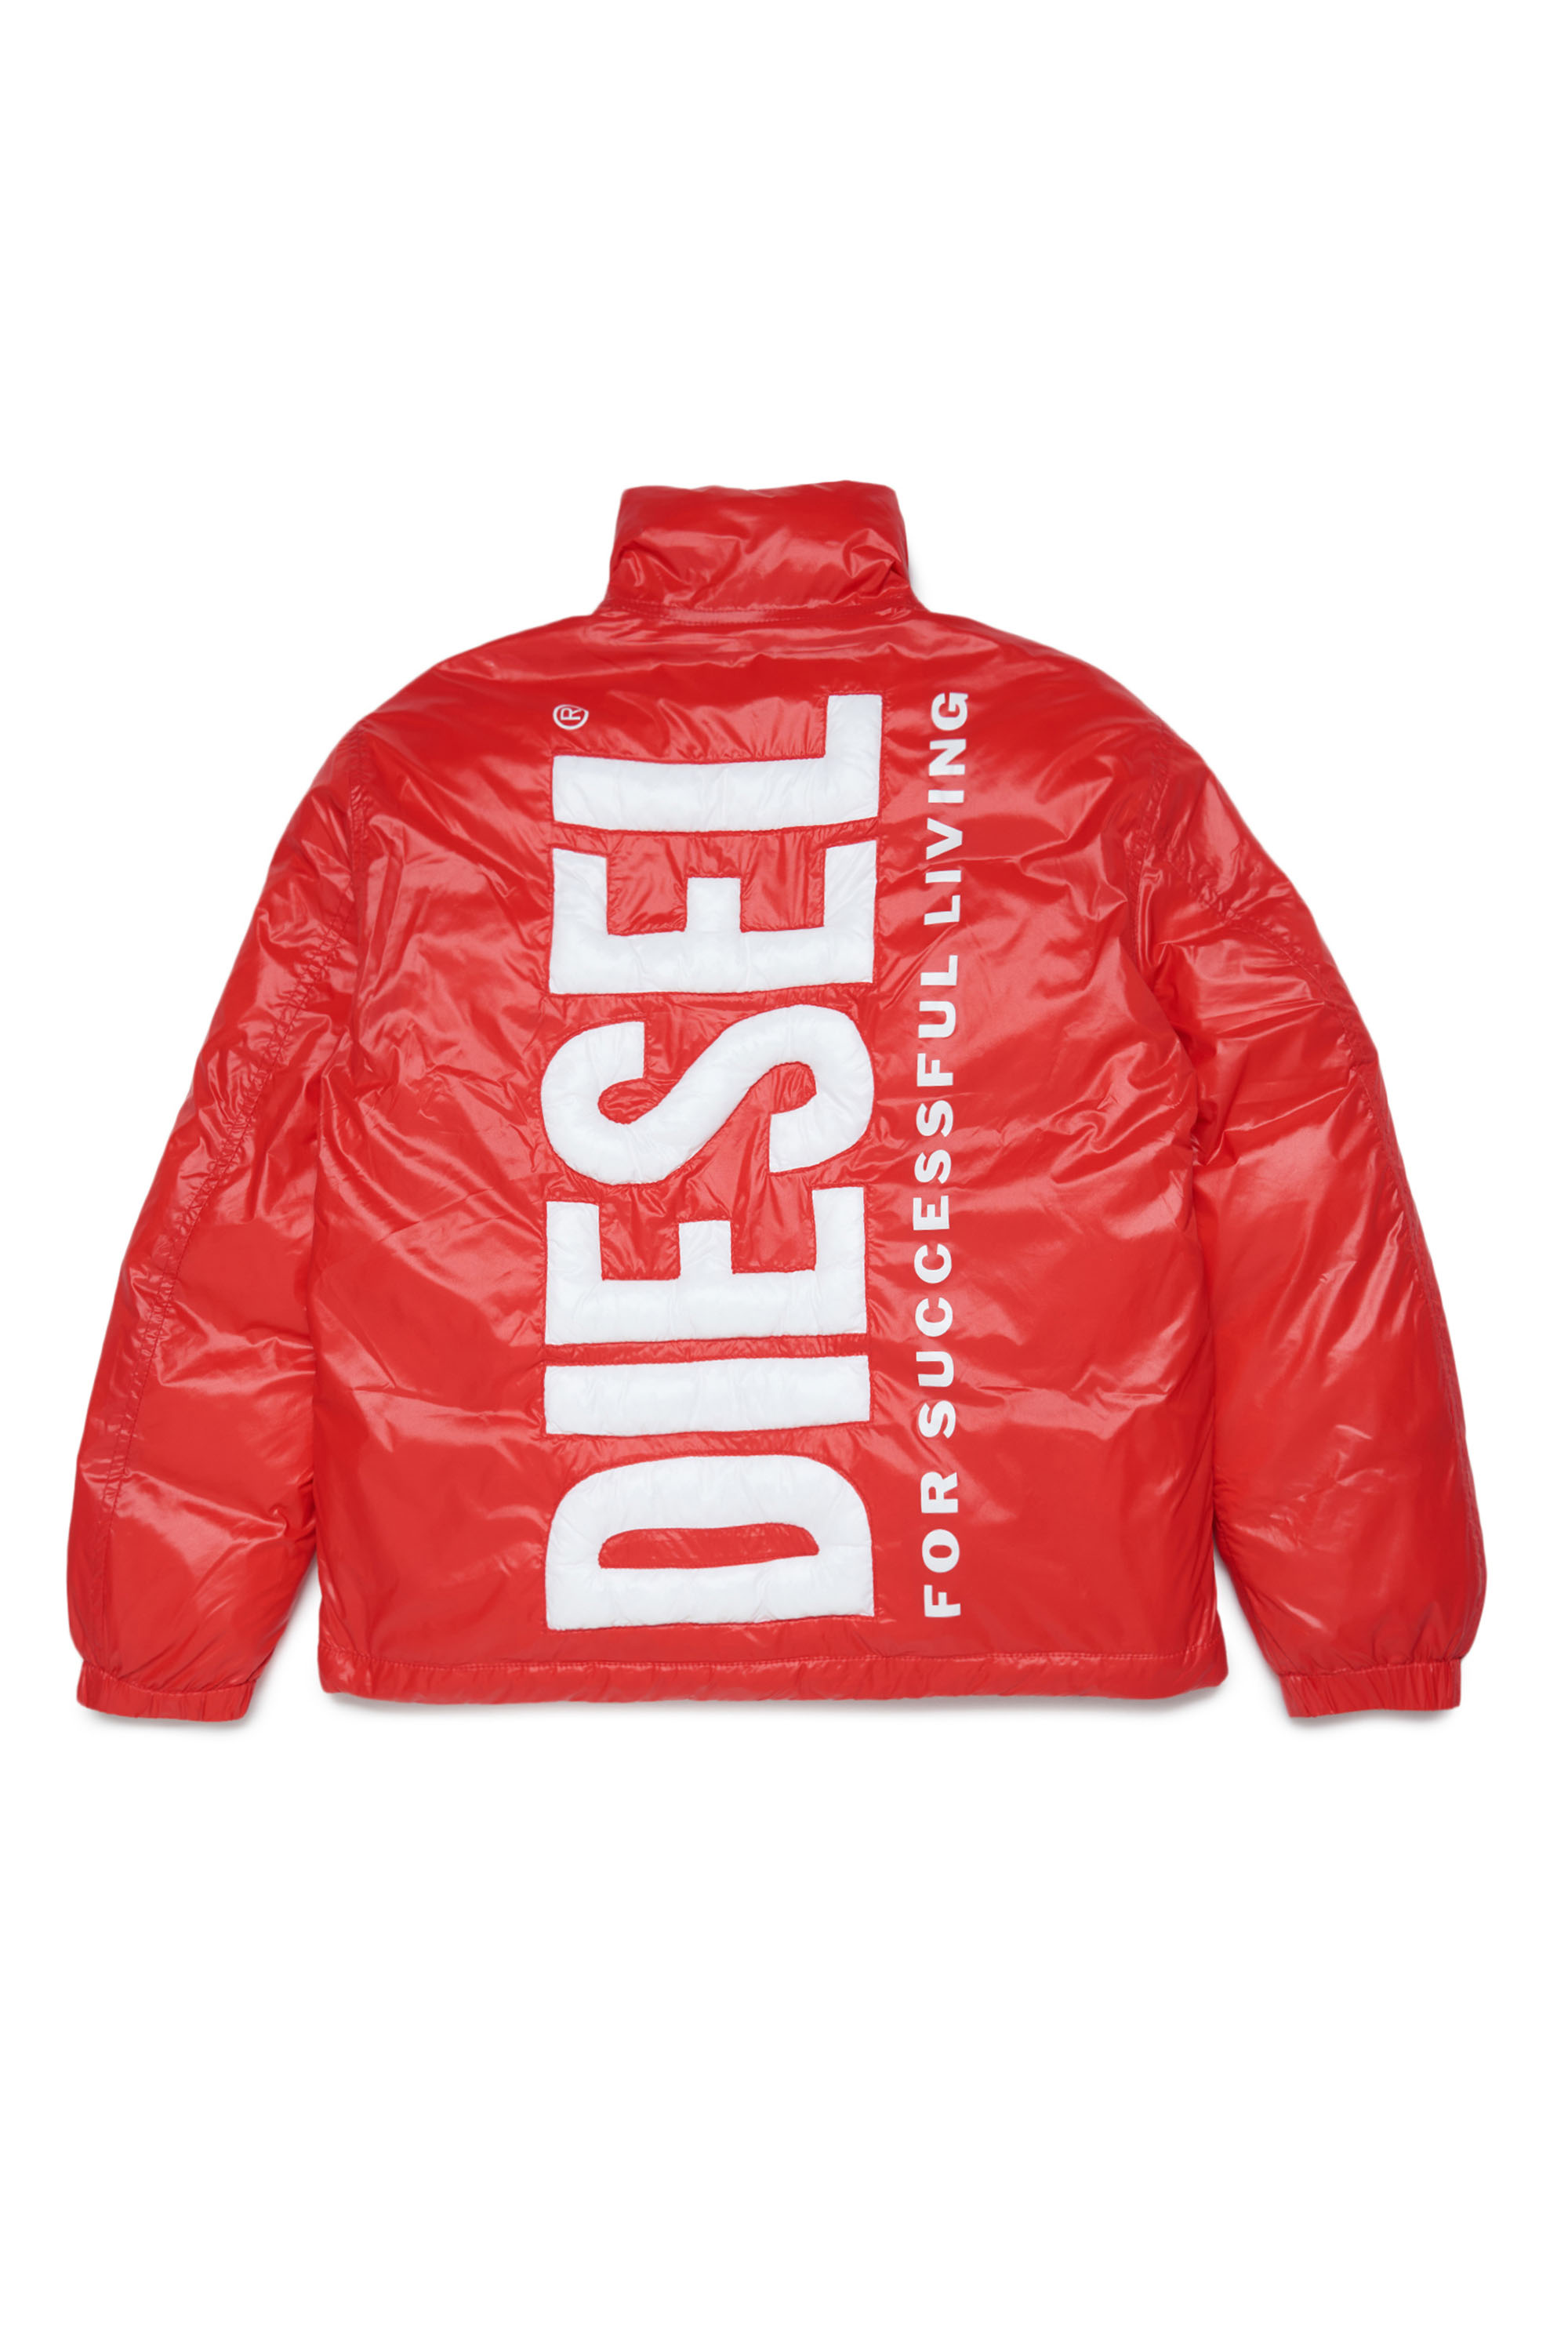 Diesel - JUPITER, Red - Image 2